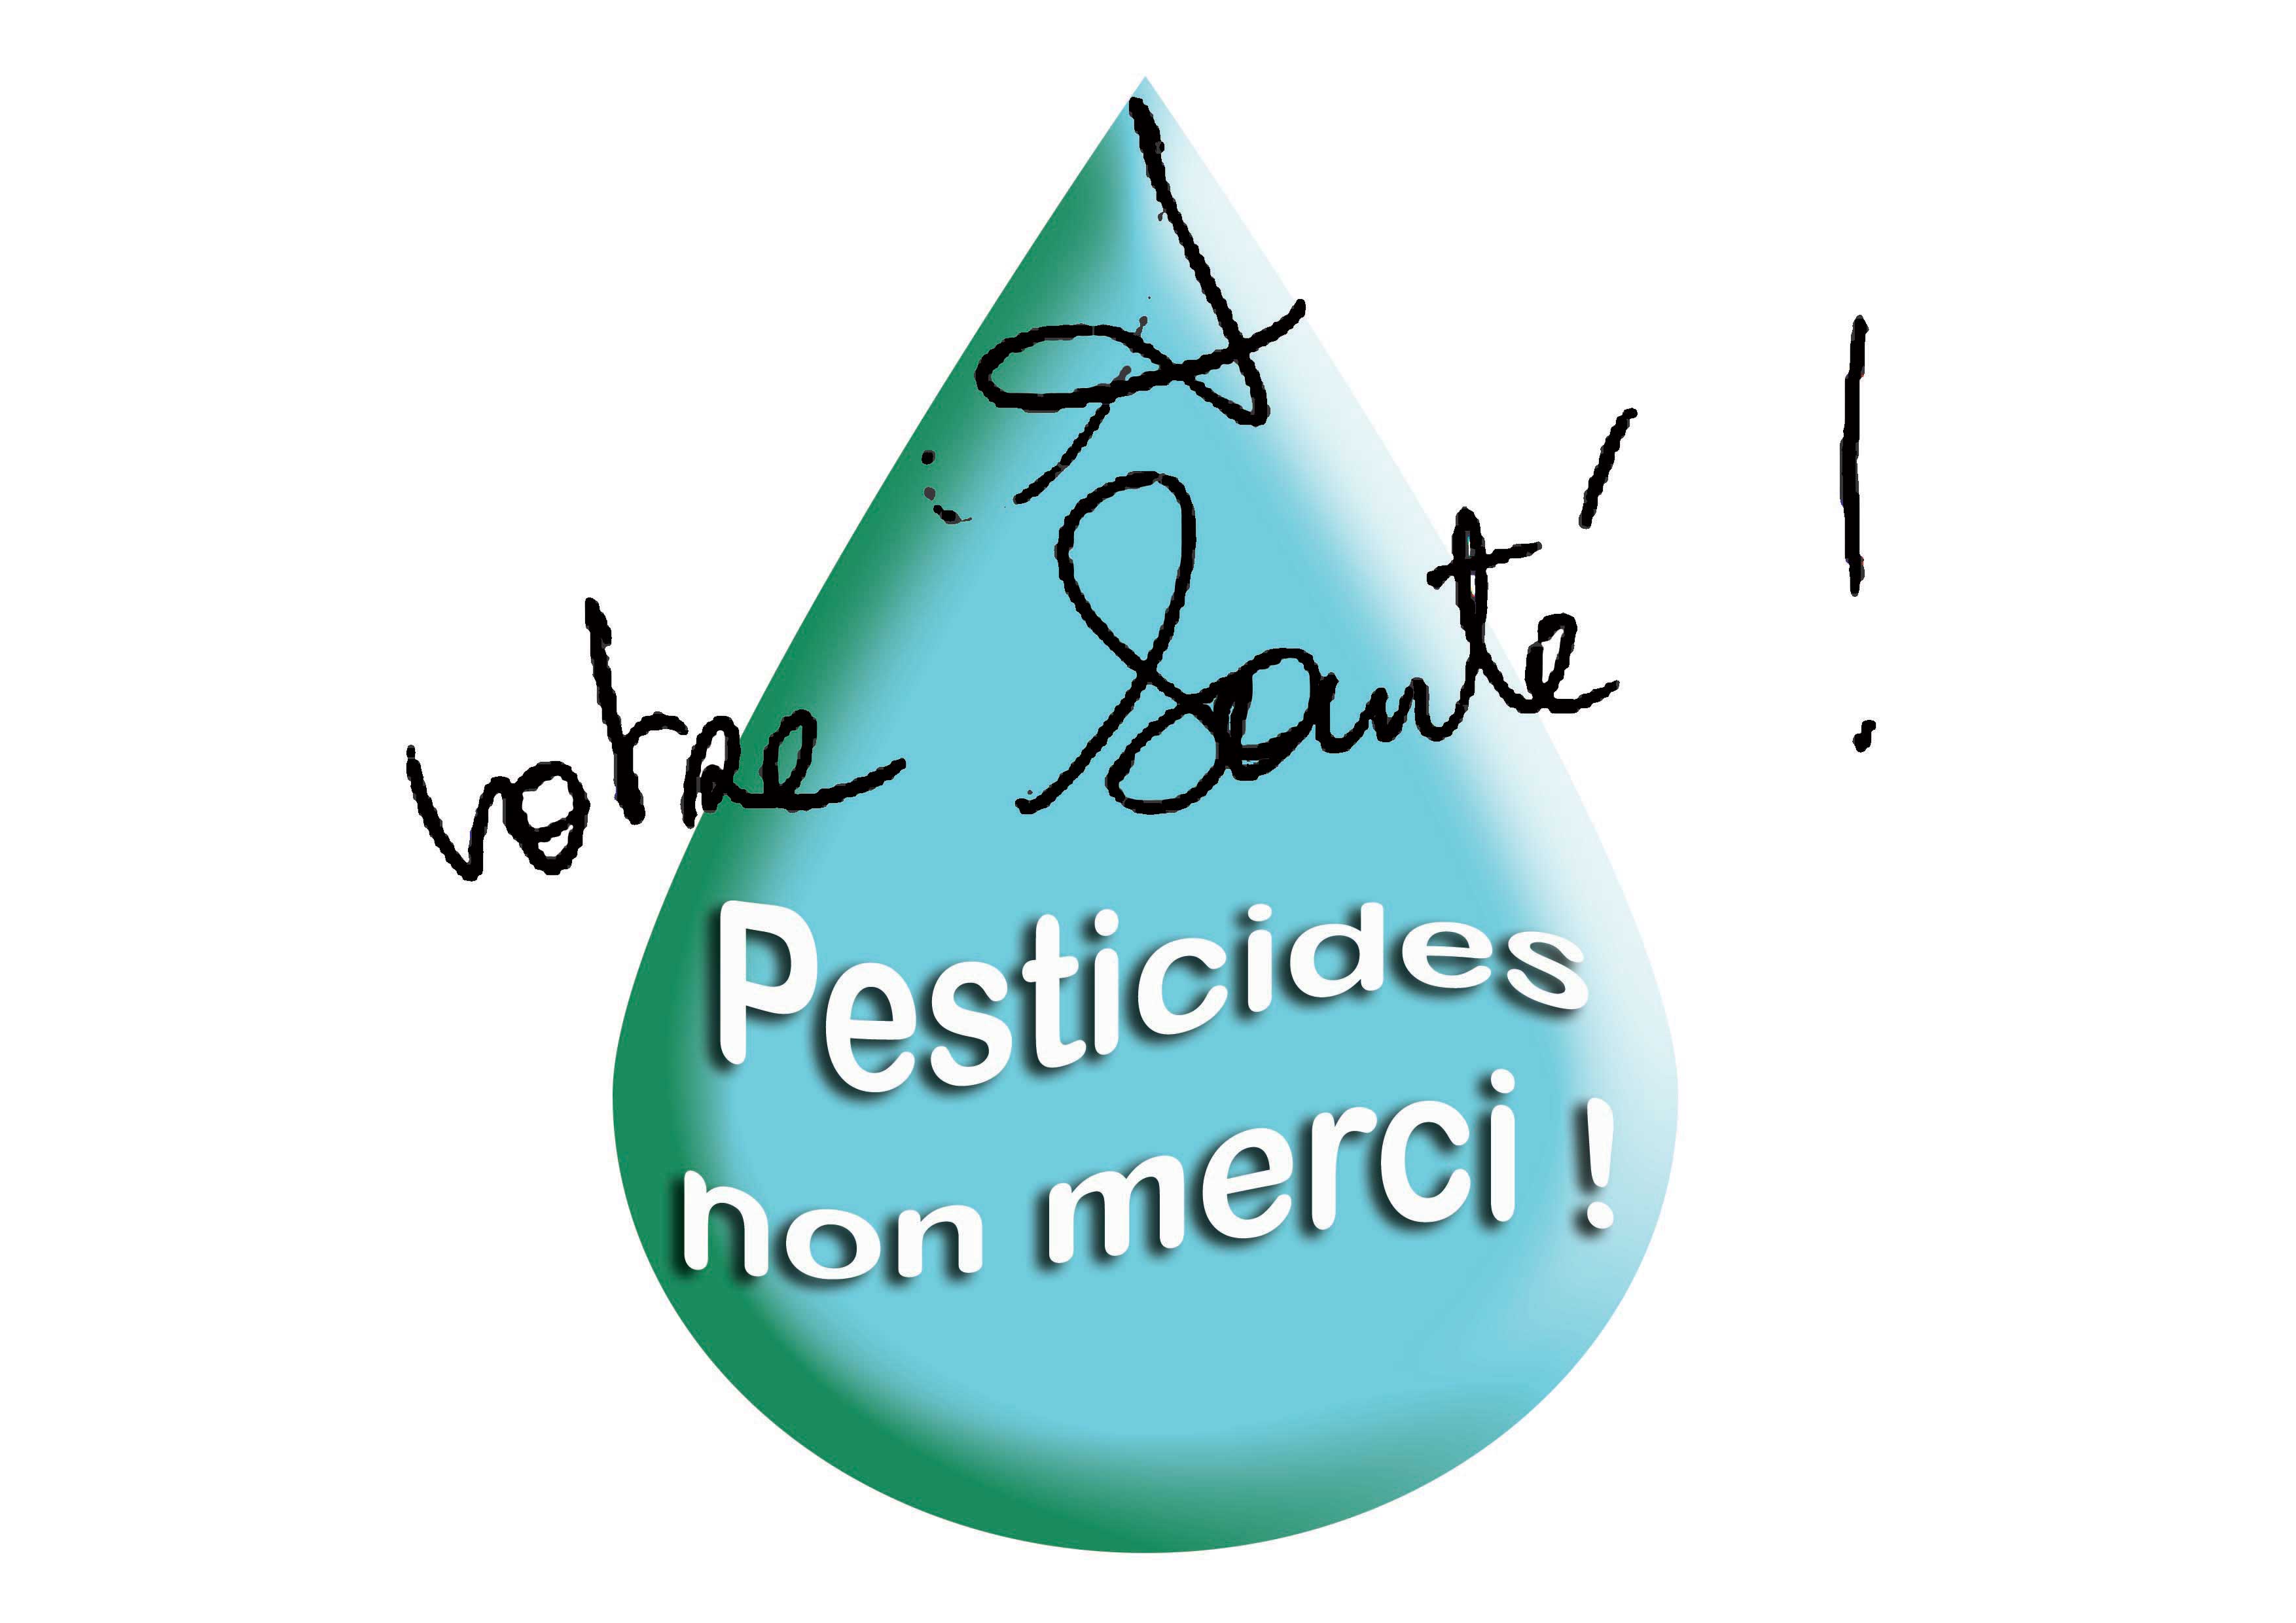 maquette-a-votre-santé-pesticides-non-merci.jpg